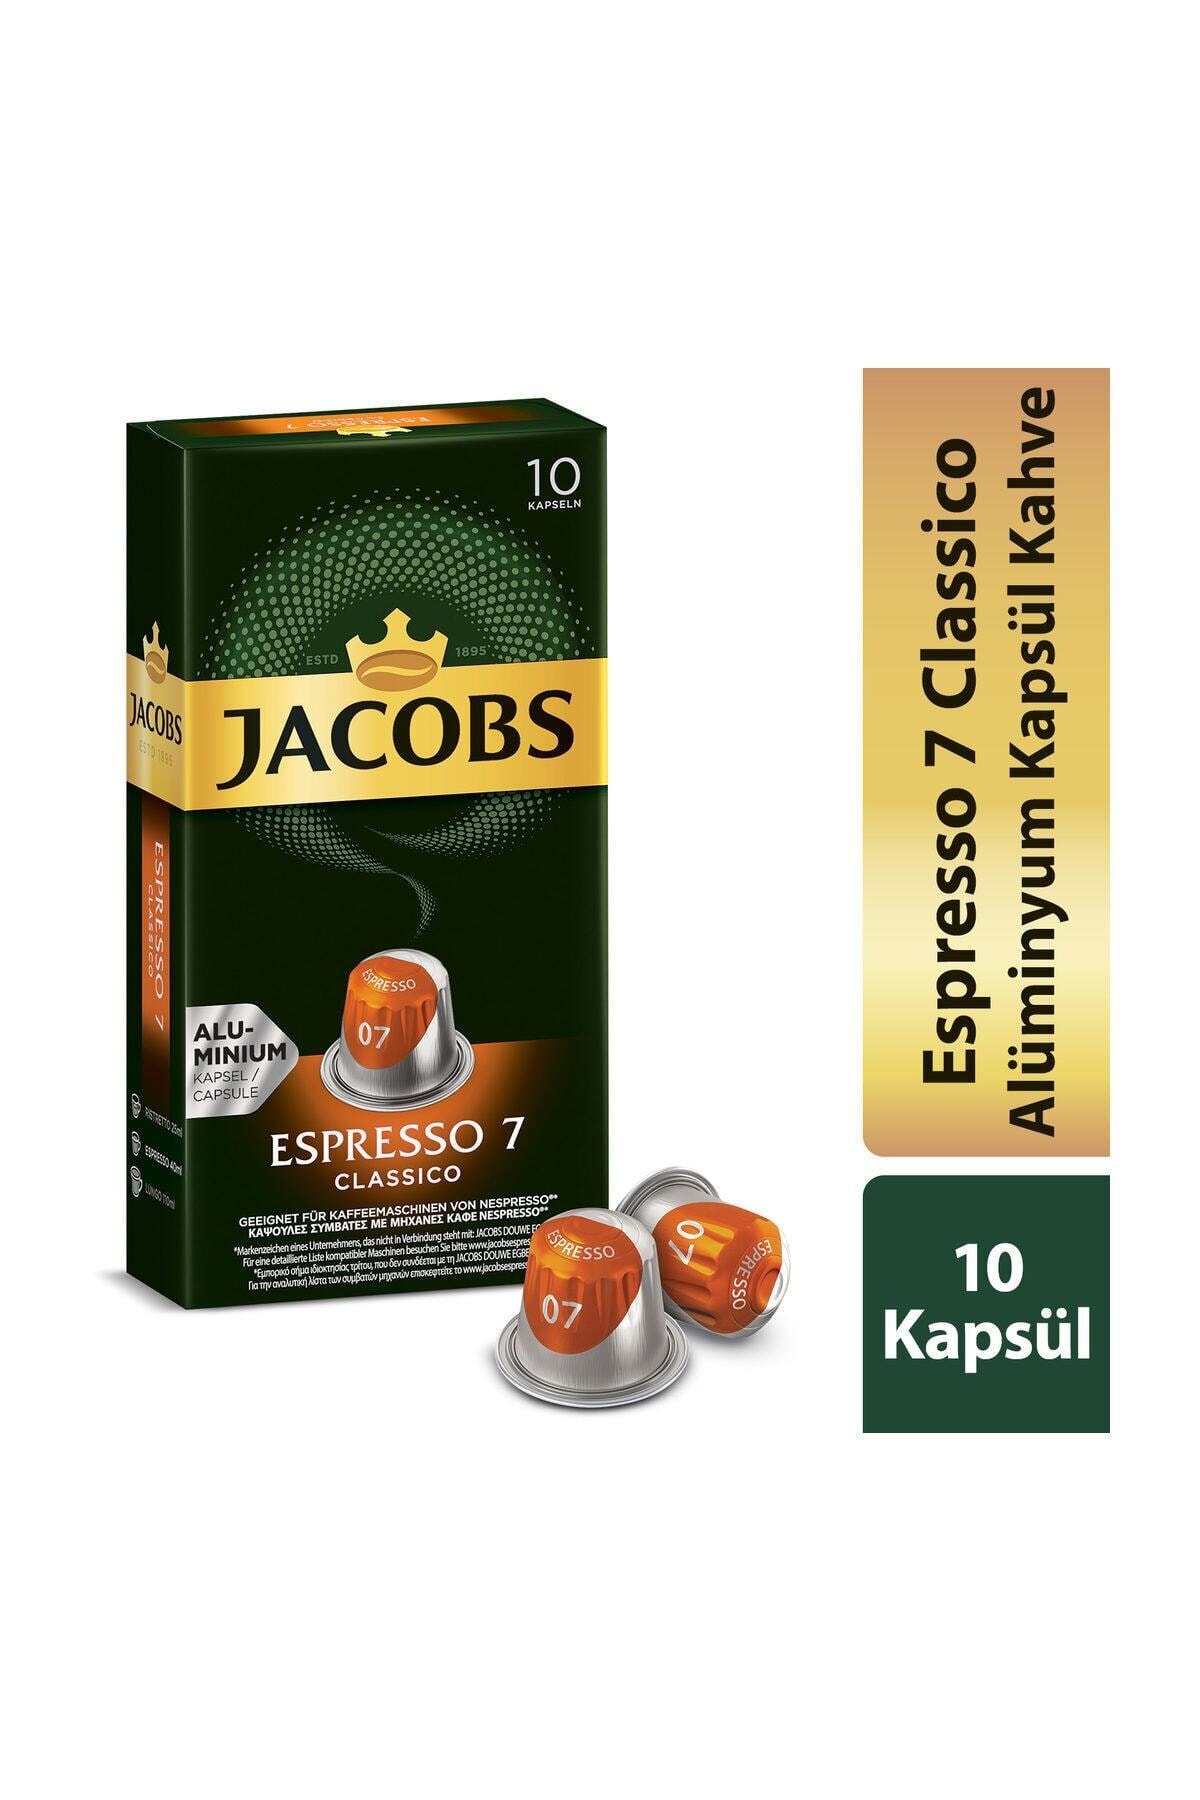 Jacobs Capsule Espresso 7 Classico 52 gr